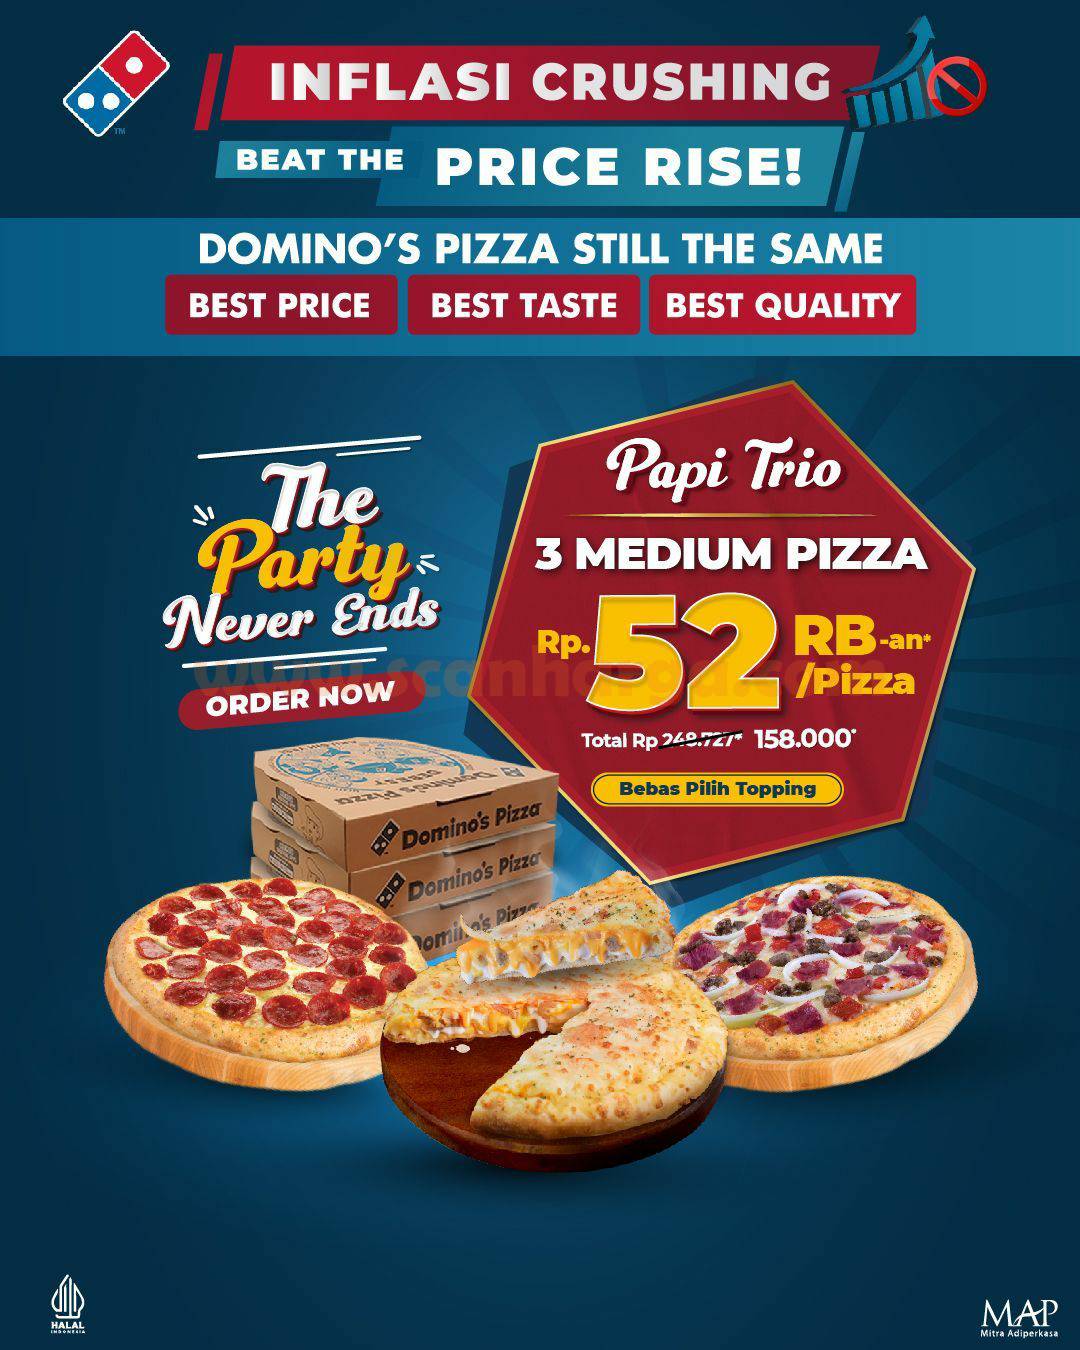 Promo DOMINOS PIZZA PAPI TRIO – Beli 3 Medium Pizza cuma 52RB